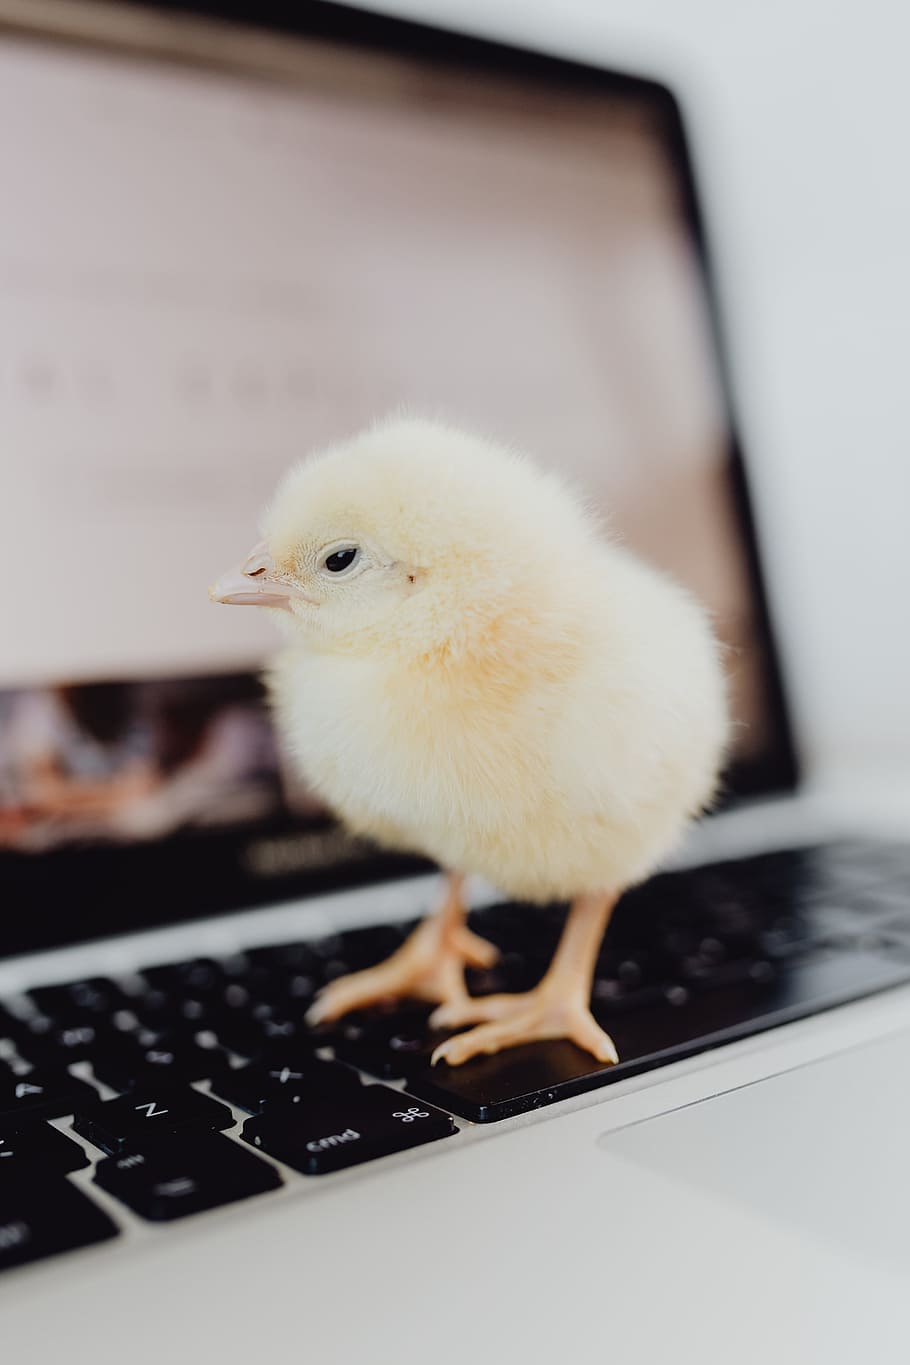 newborn, little, chicken, laptop, computer, keyboard, yellow, macbook, bird, baby